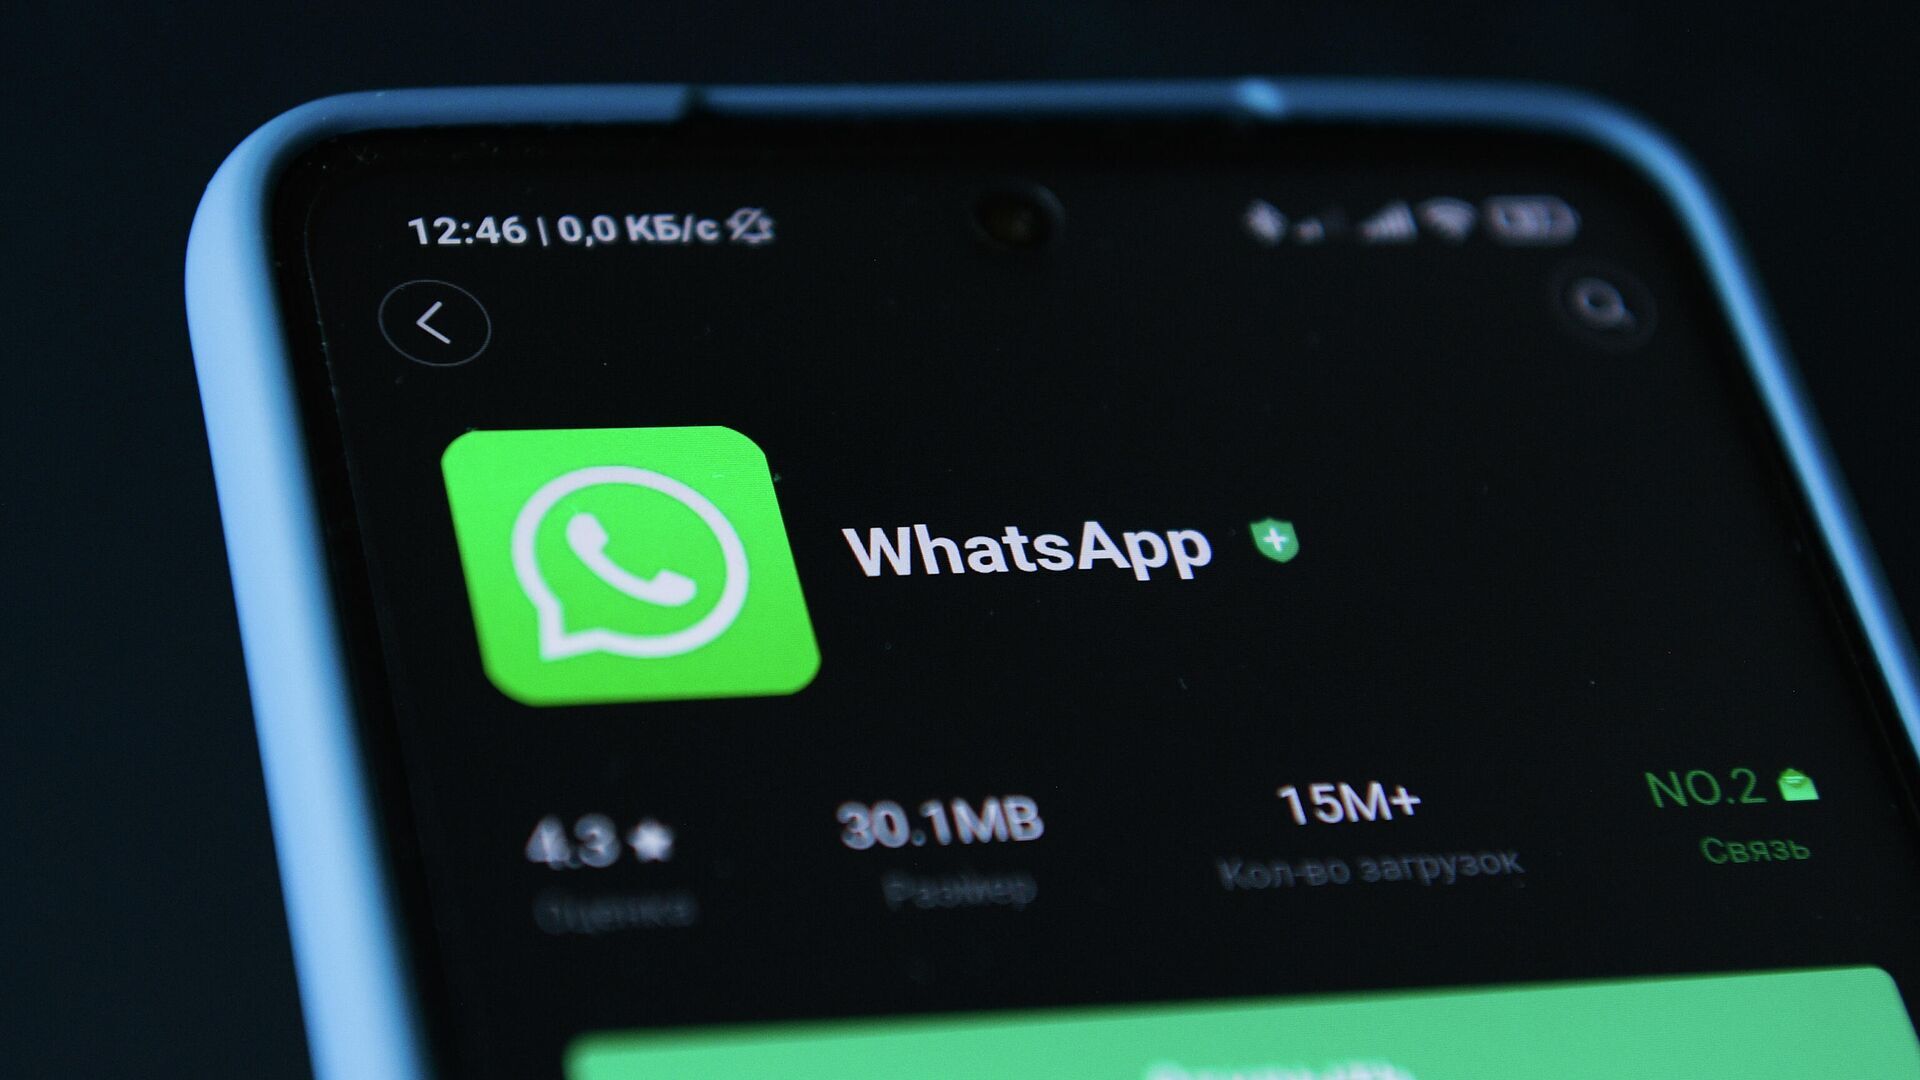   iphone    whatsapp  2022 